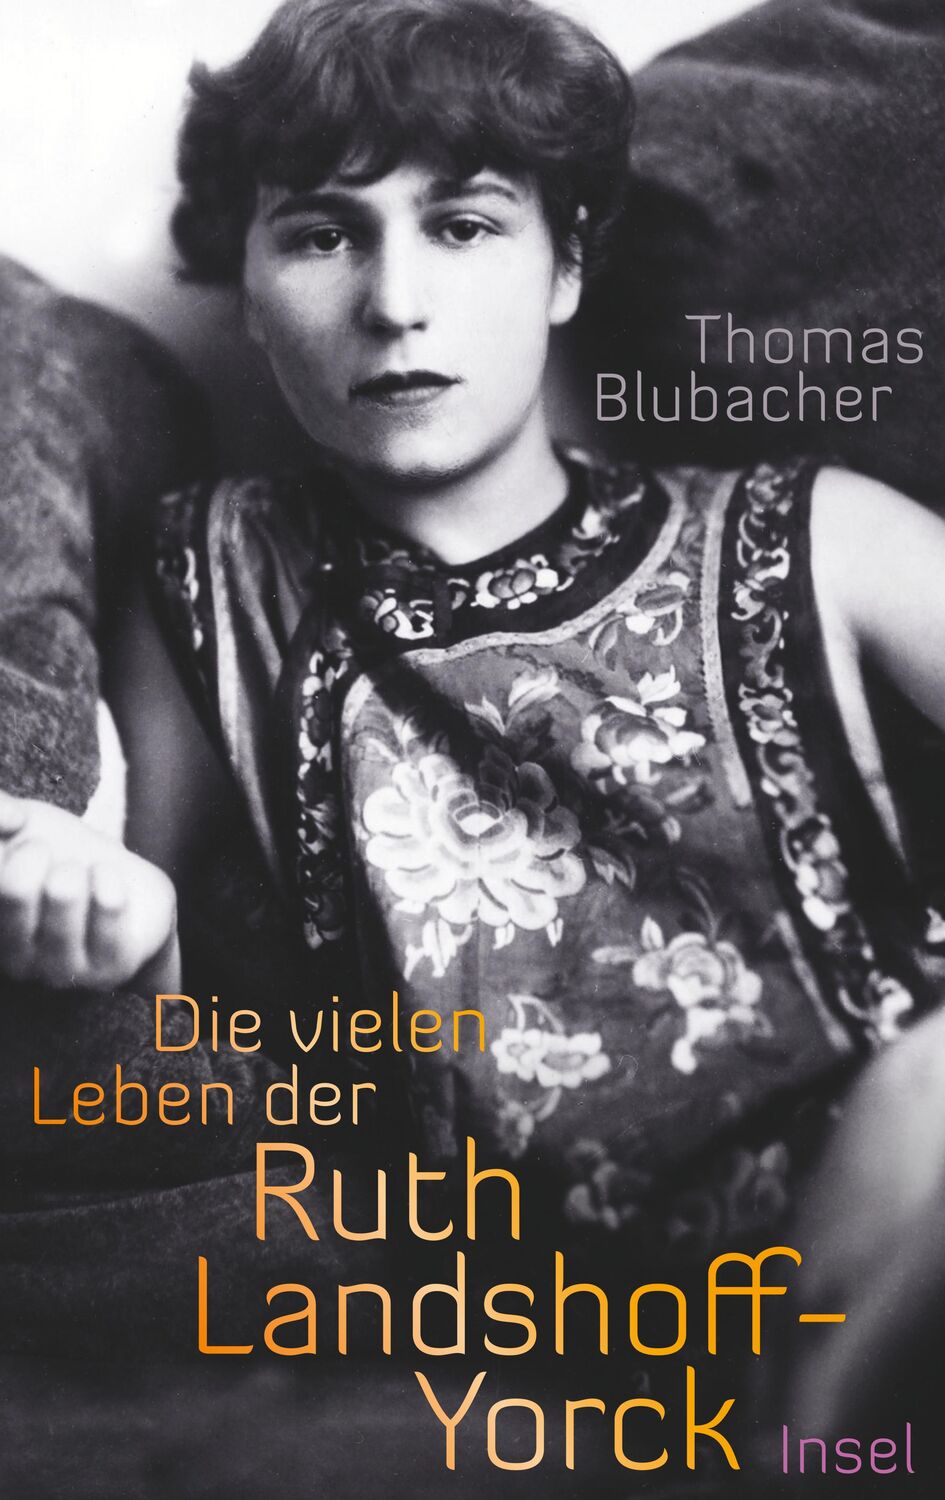 Die vielen Leben der Ruth Landshoff-Yorck - Blubacher, Thomas